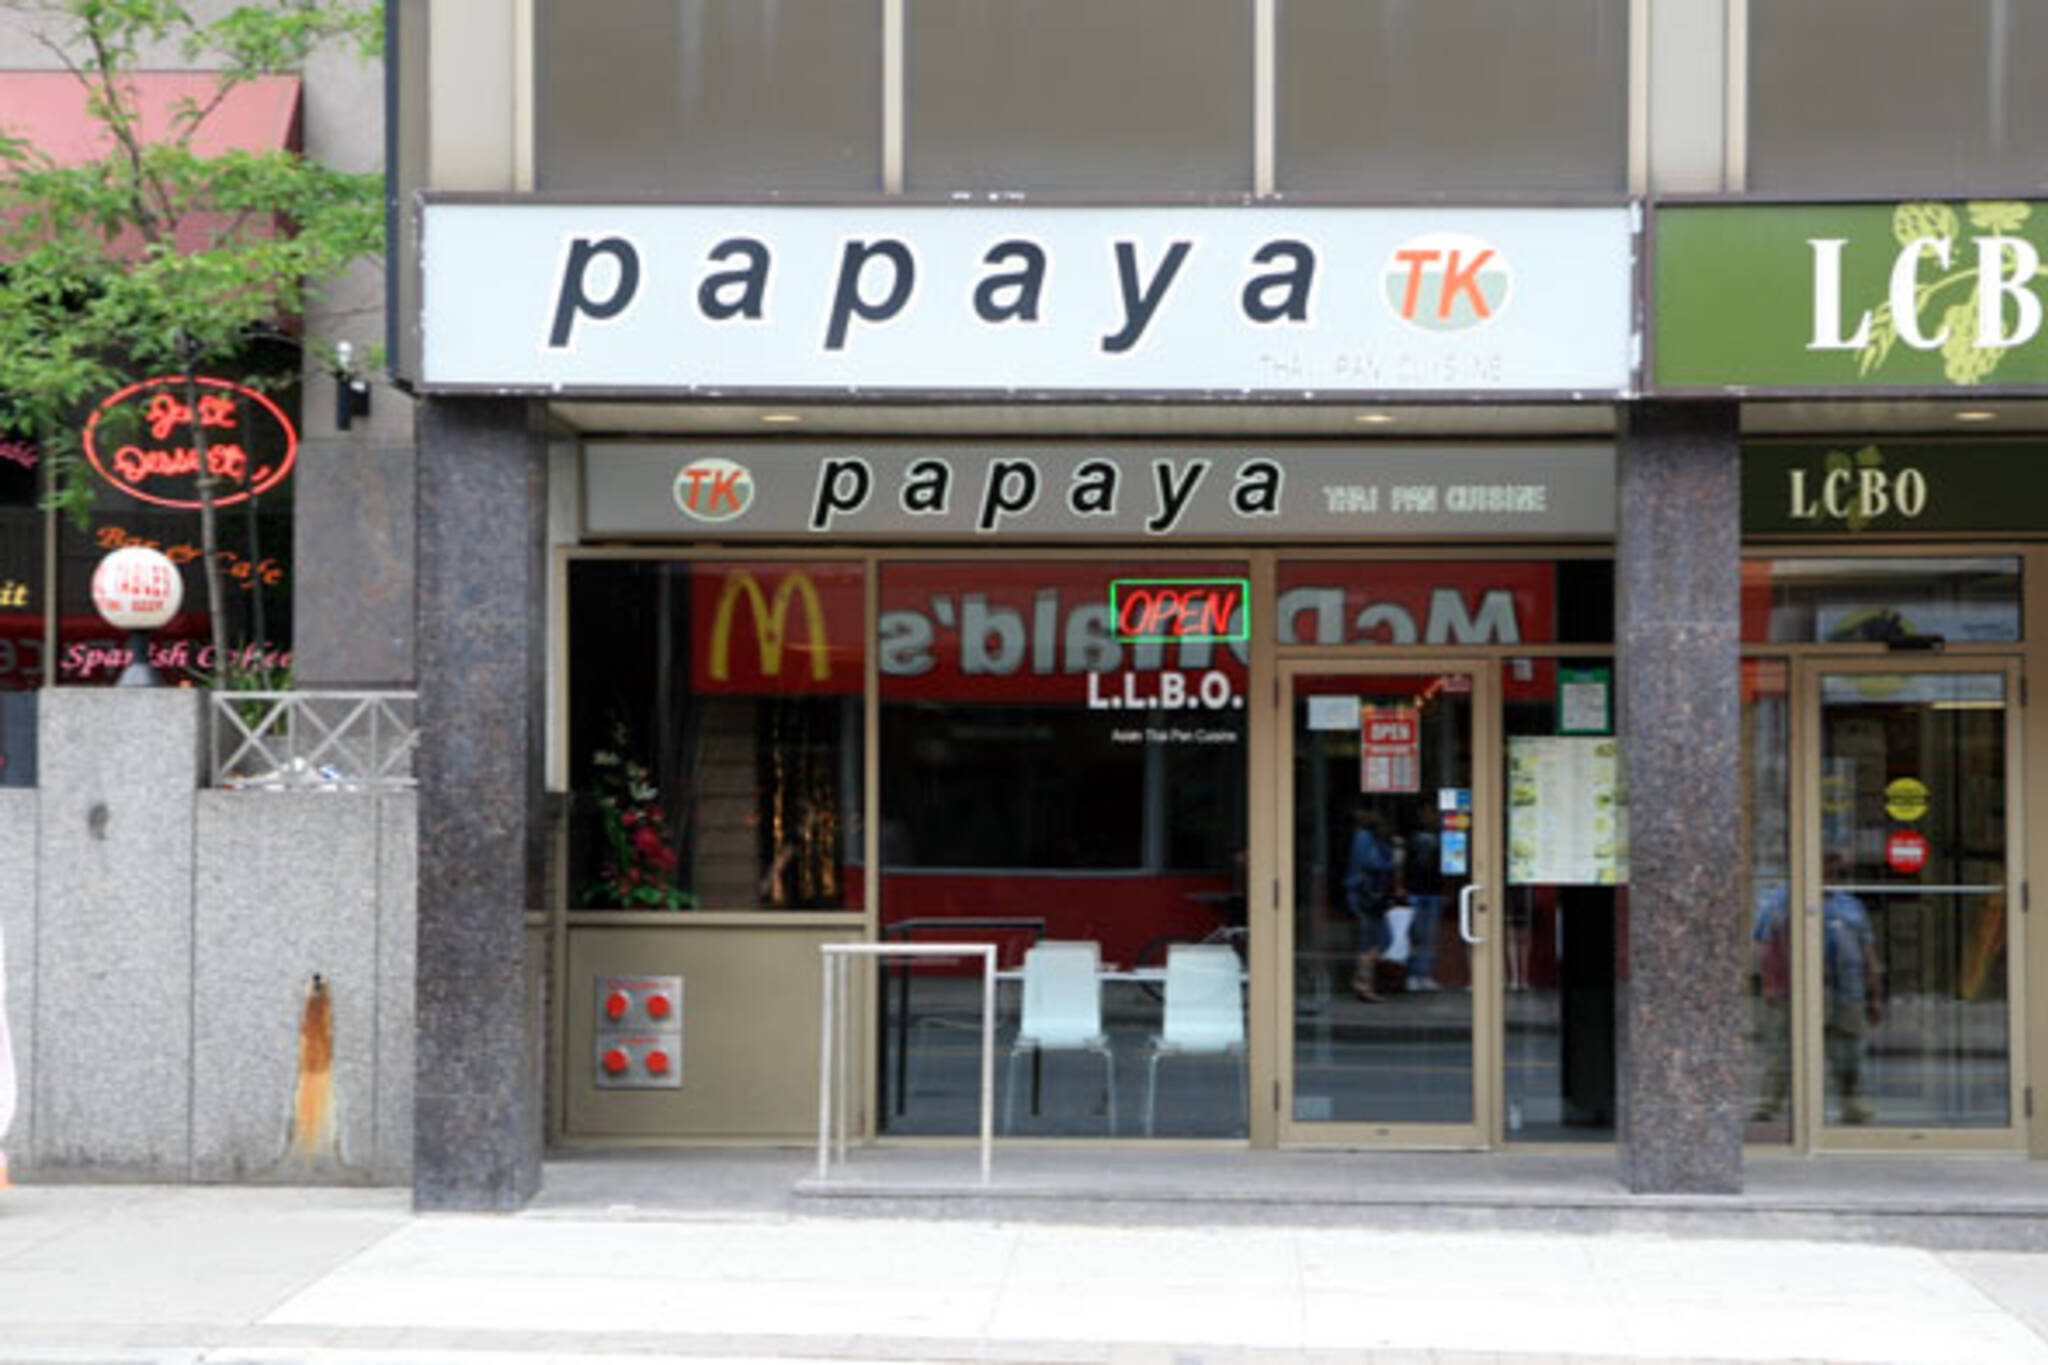 Papaya Toronto